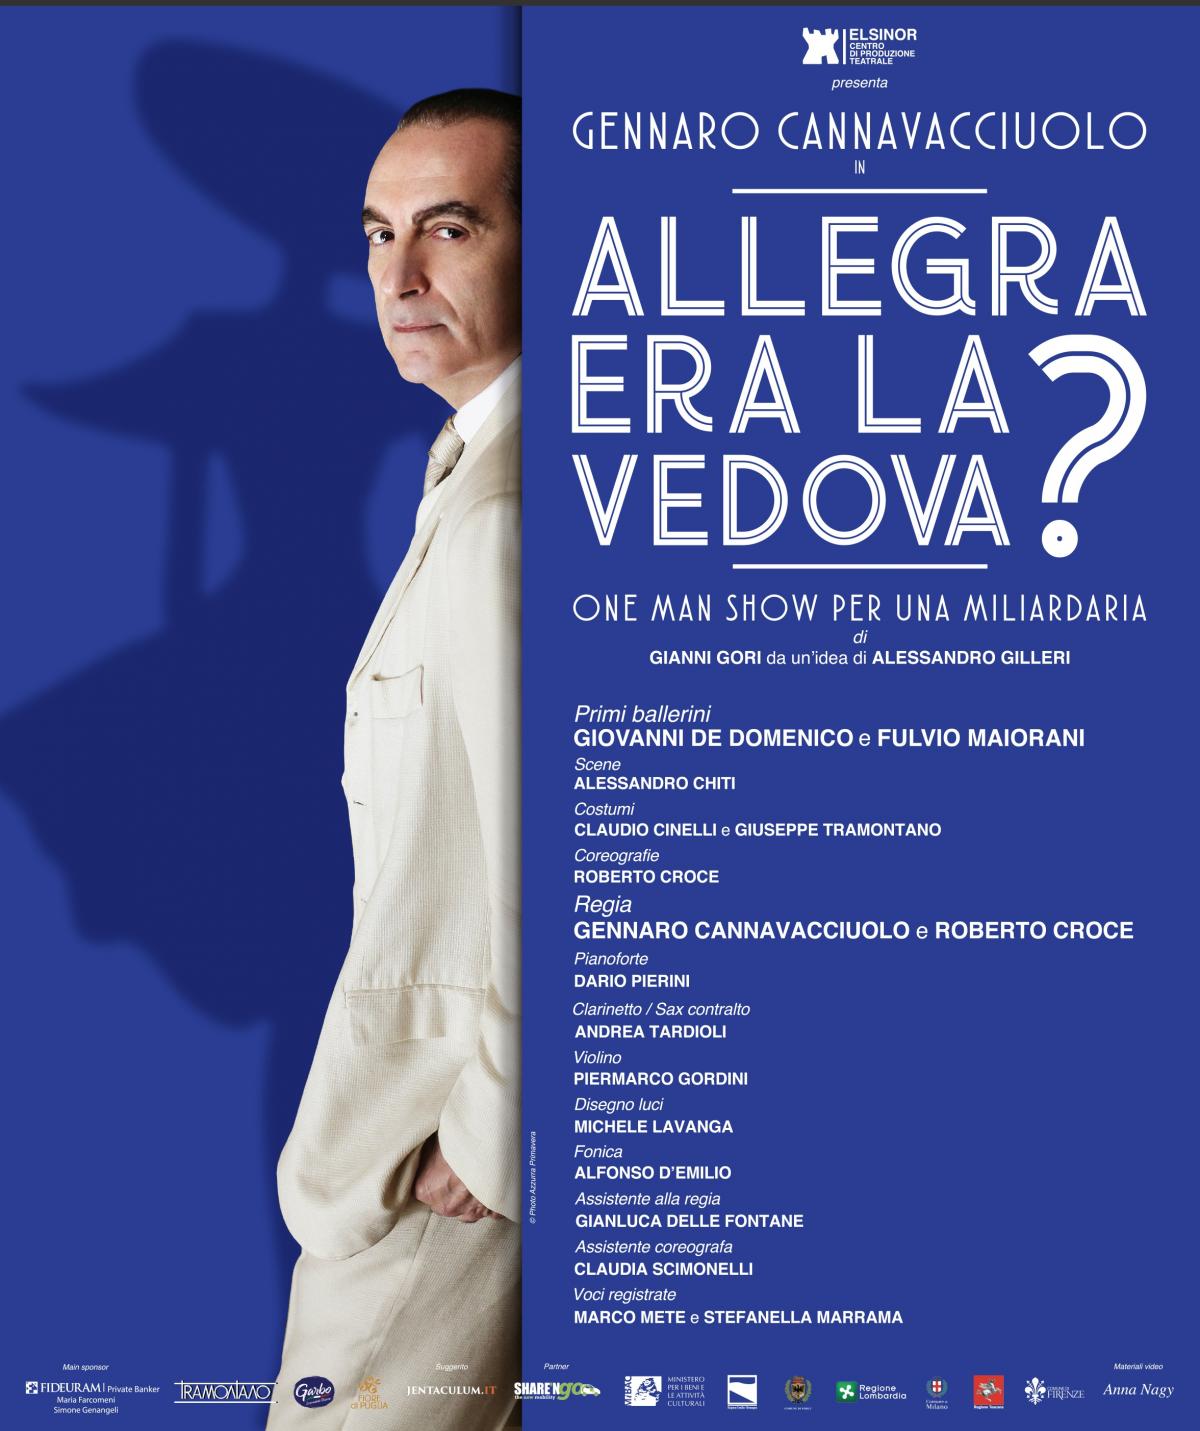 6 mars - 10 mars 2019 - Milano - Allegra era la Vedova?